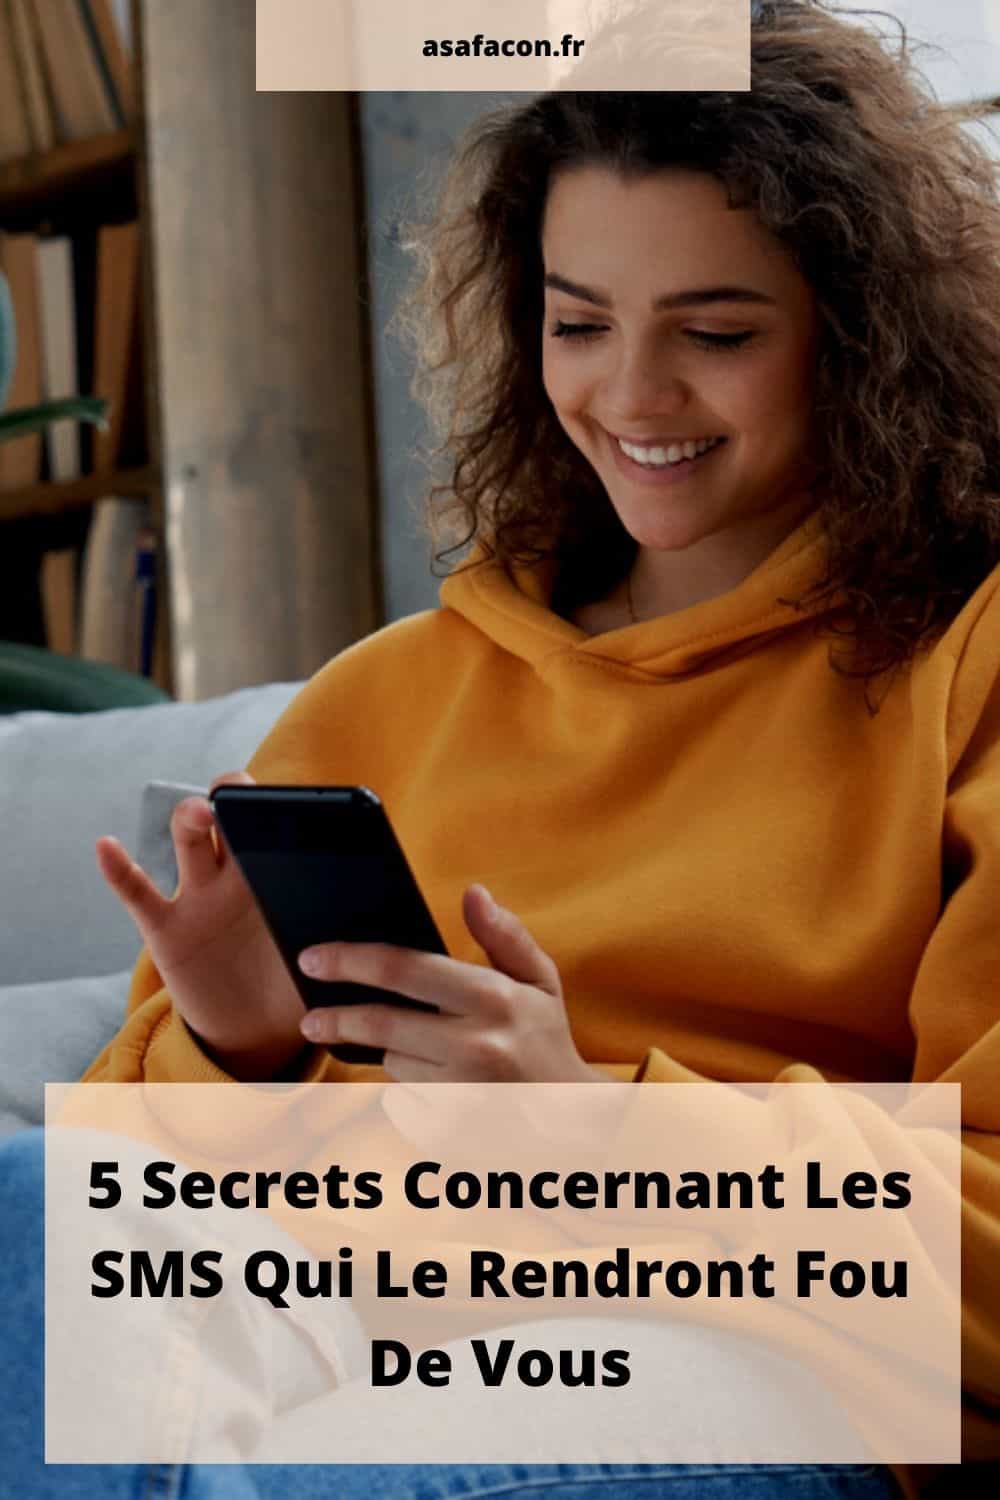 5 Secrets Concernant Les SMS Qui Le Rendront Fou De Vous